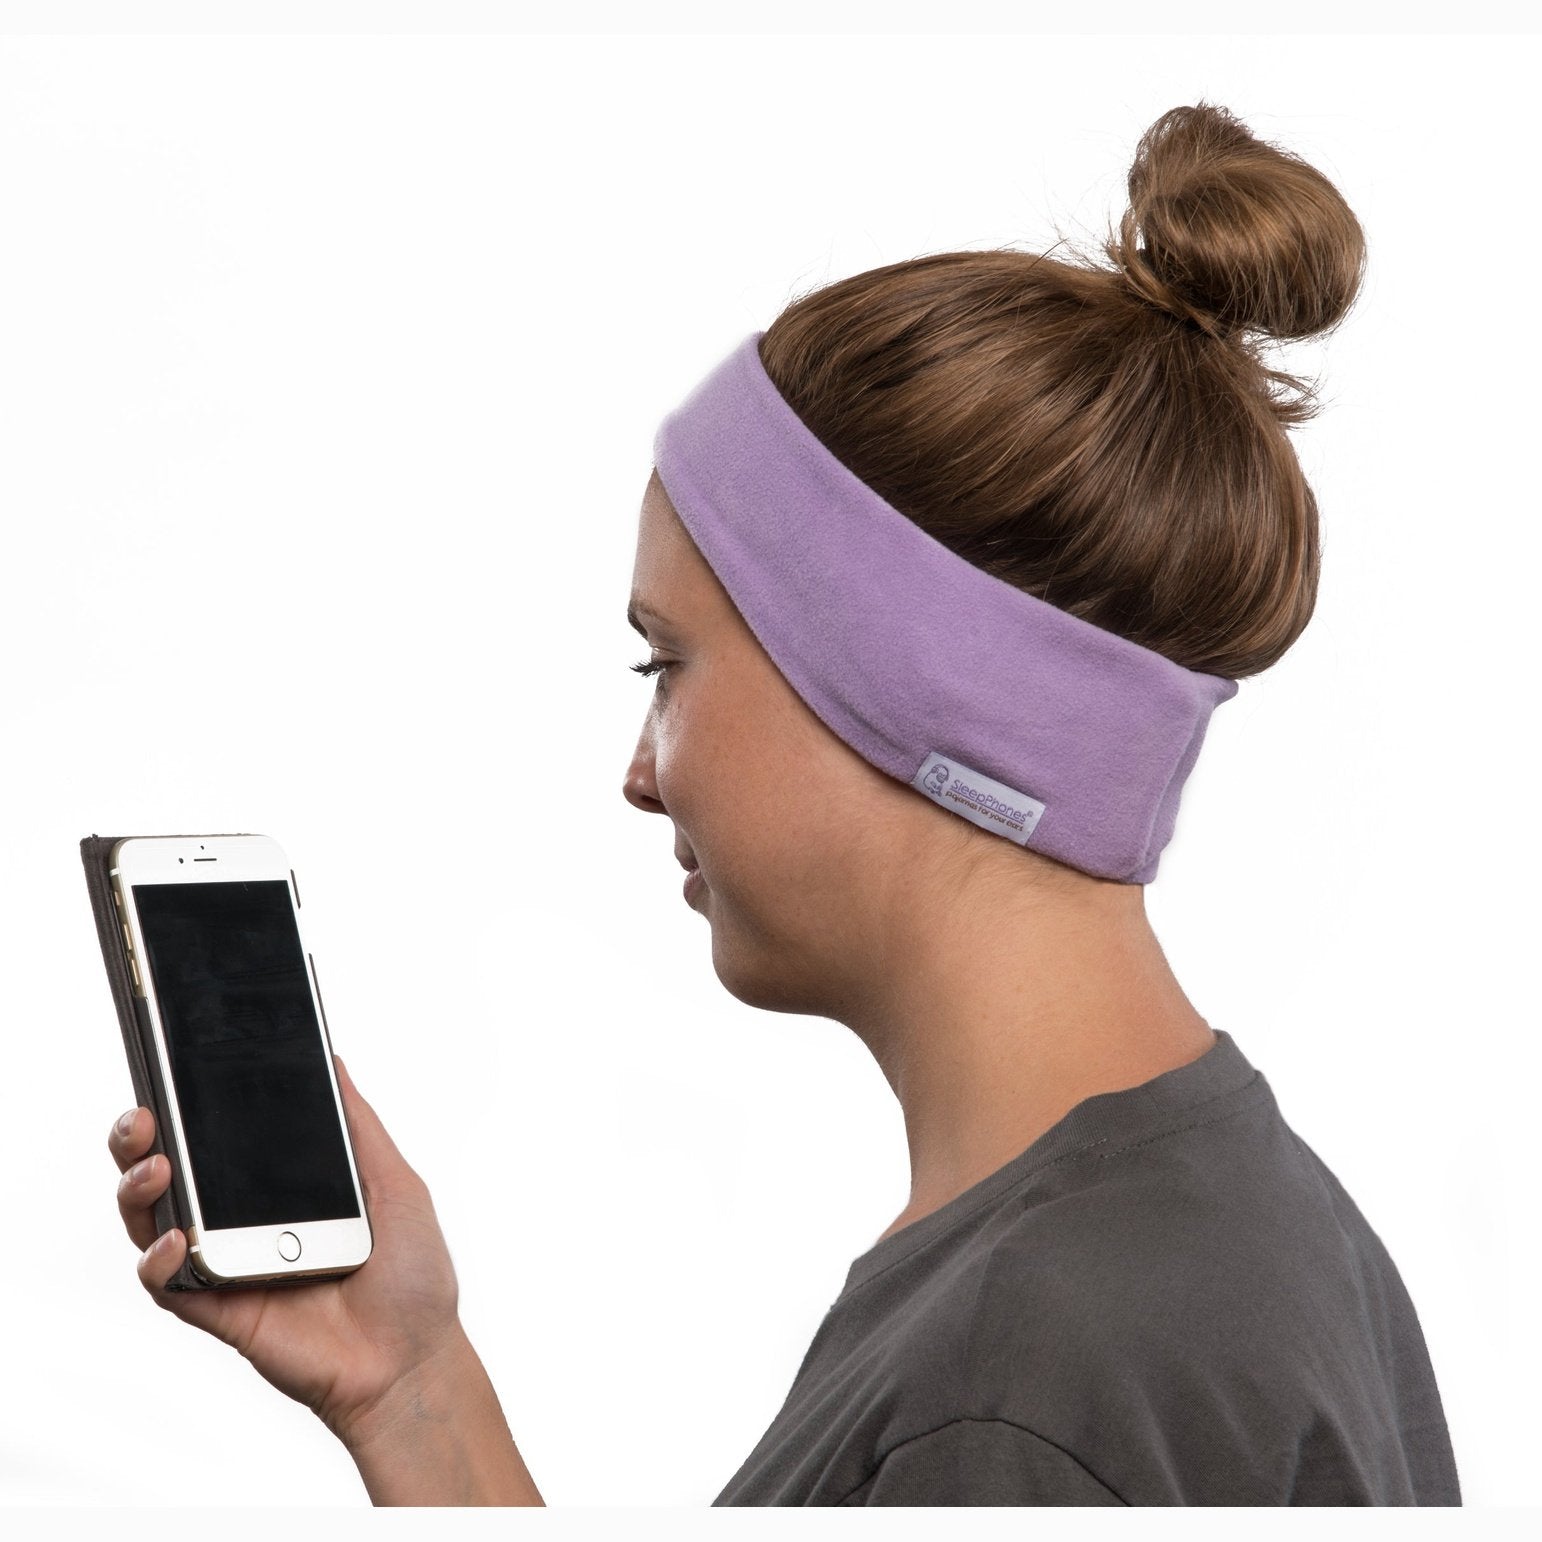 SleepPhones® Effortless v6 Fleece Quiet Lavender Bluetooth-hoofdtelefoon met Draadloos QI Opladen - Small